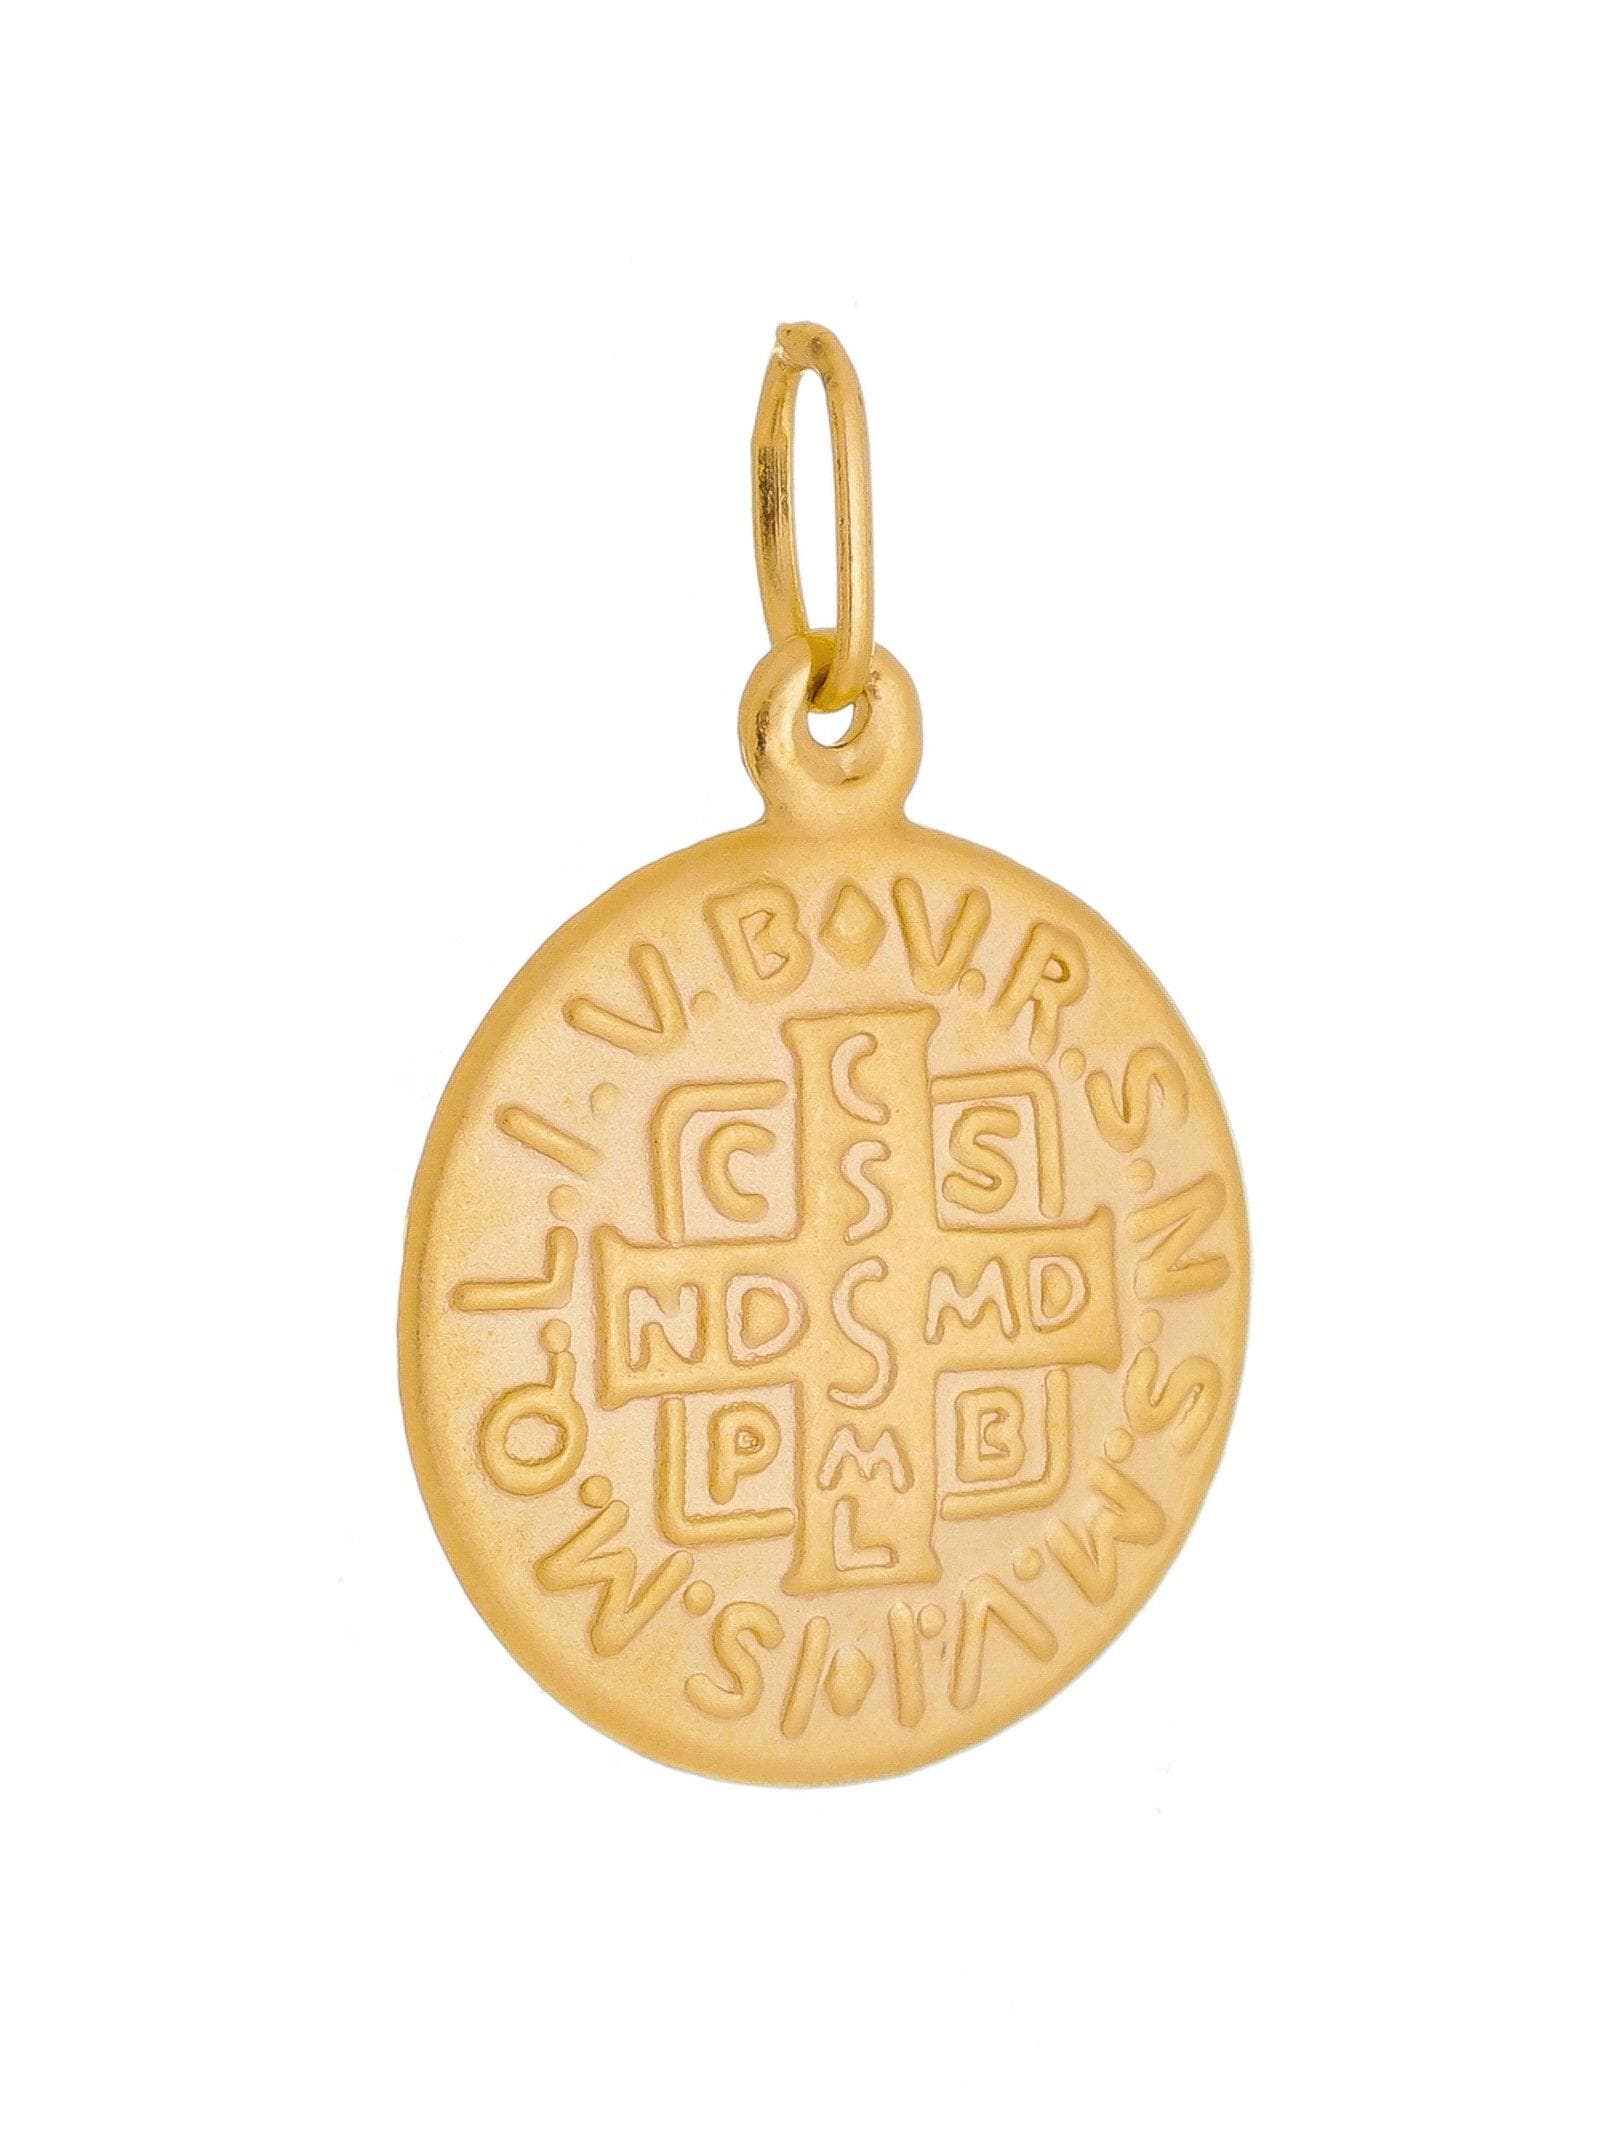 Pingente de São Bento Prata de Lei 925 com Banho de Ouro 18 k-TerraCotta Arte Sacra